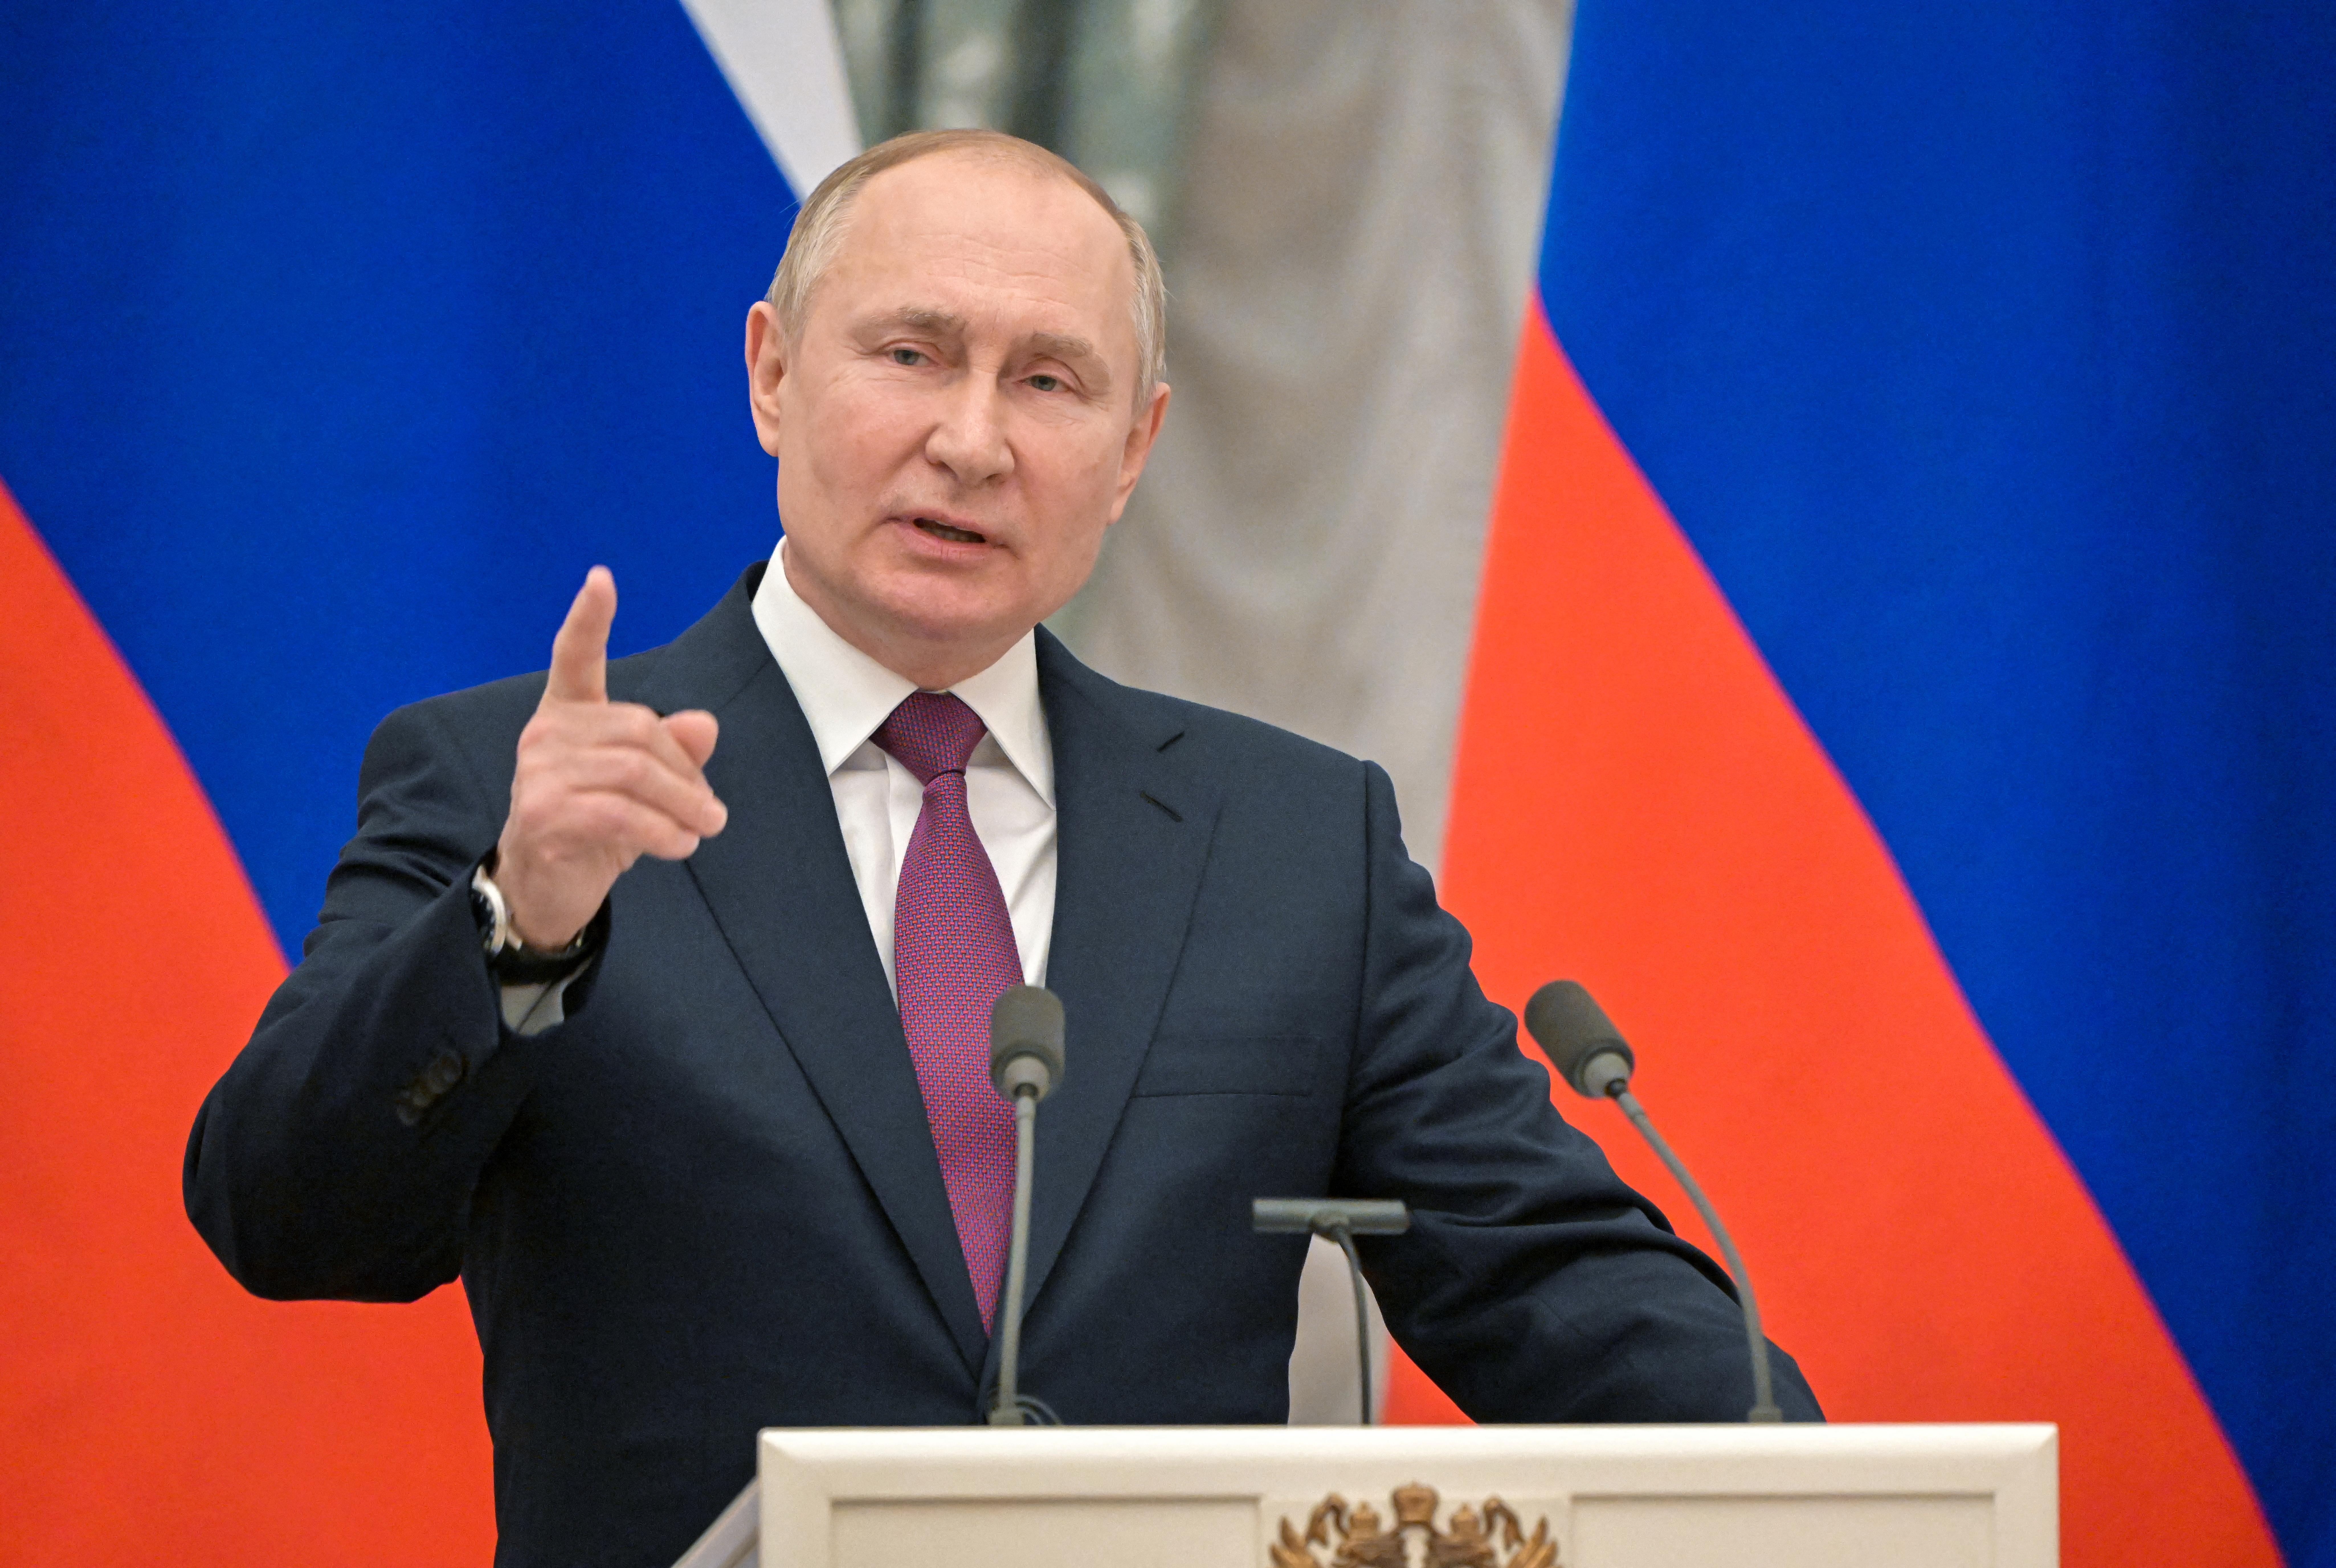 Putin erkennt Separatistengebiete in Ostukraine an